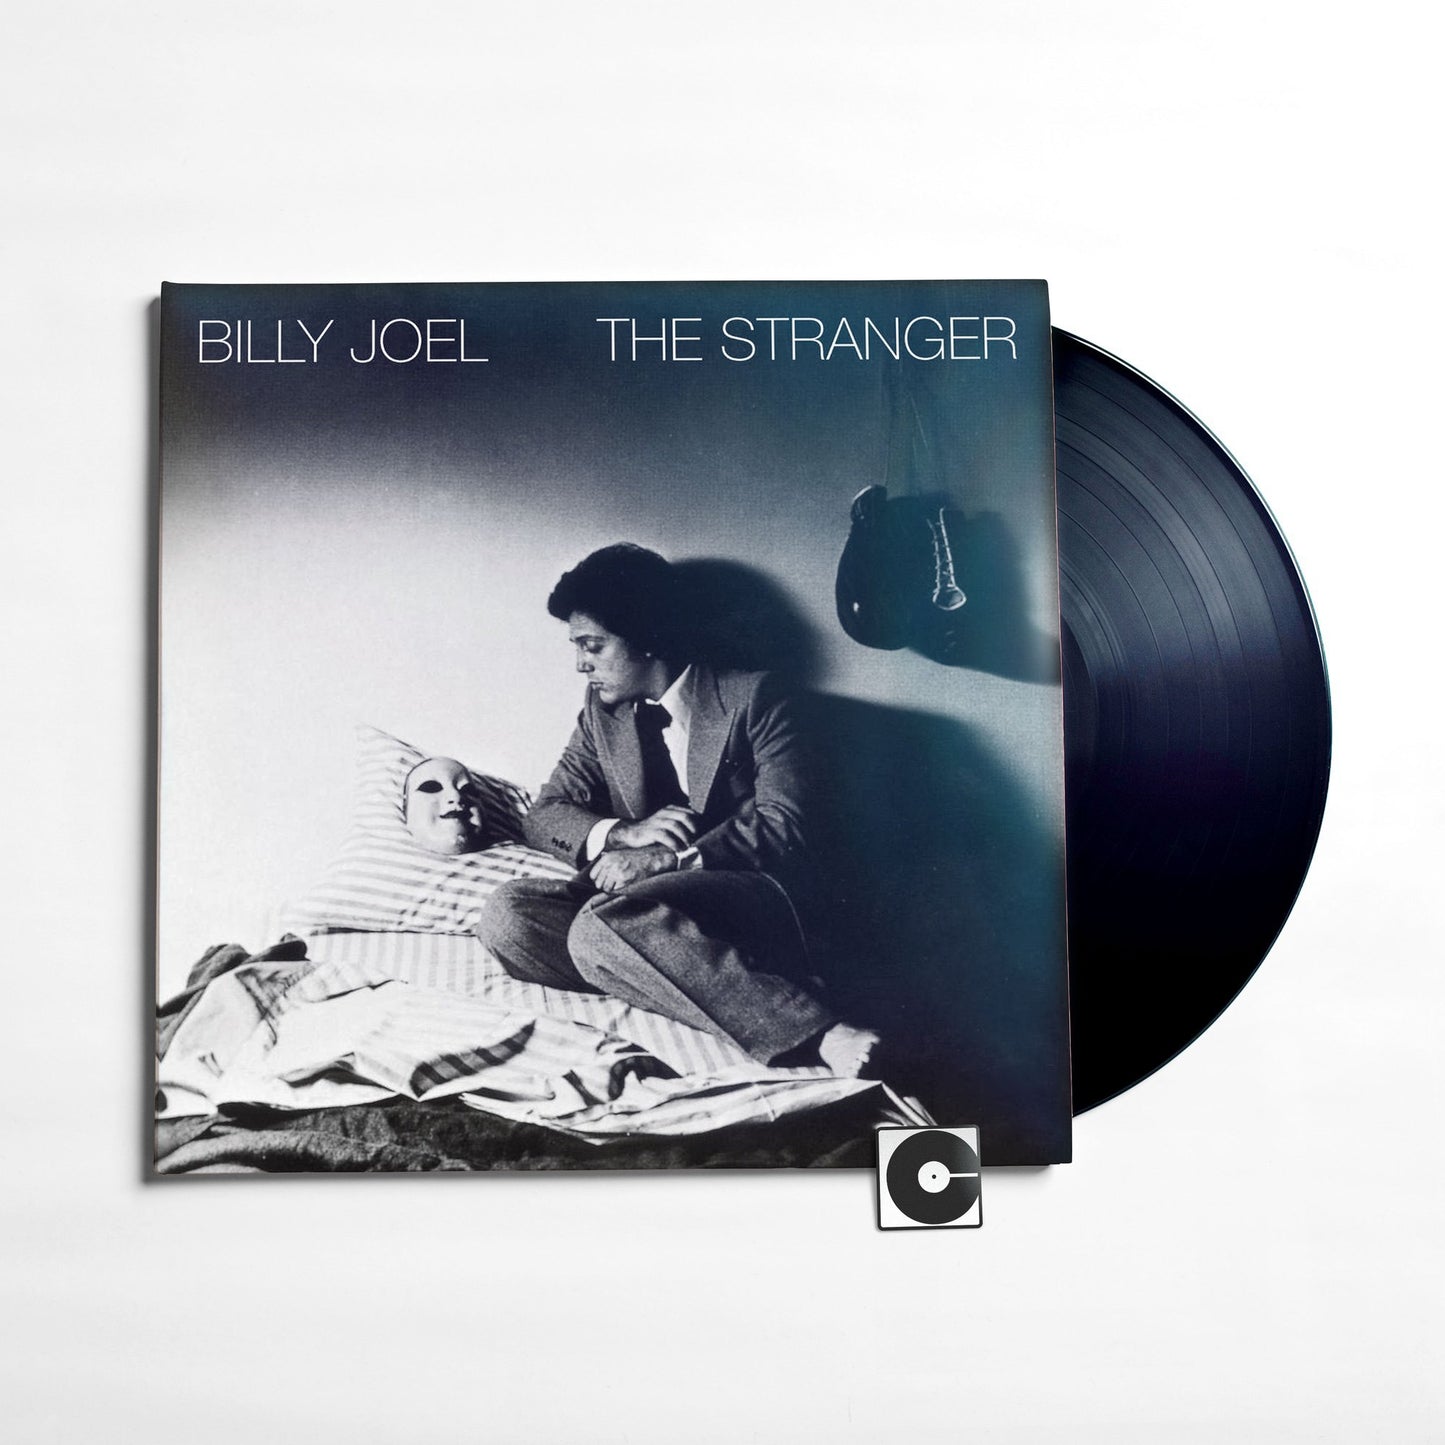 Billy Joel - "The Stranger"